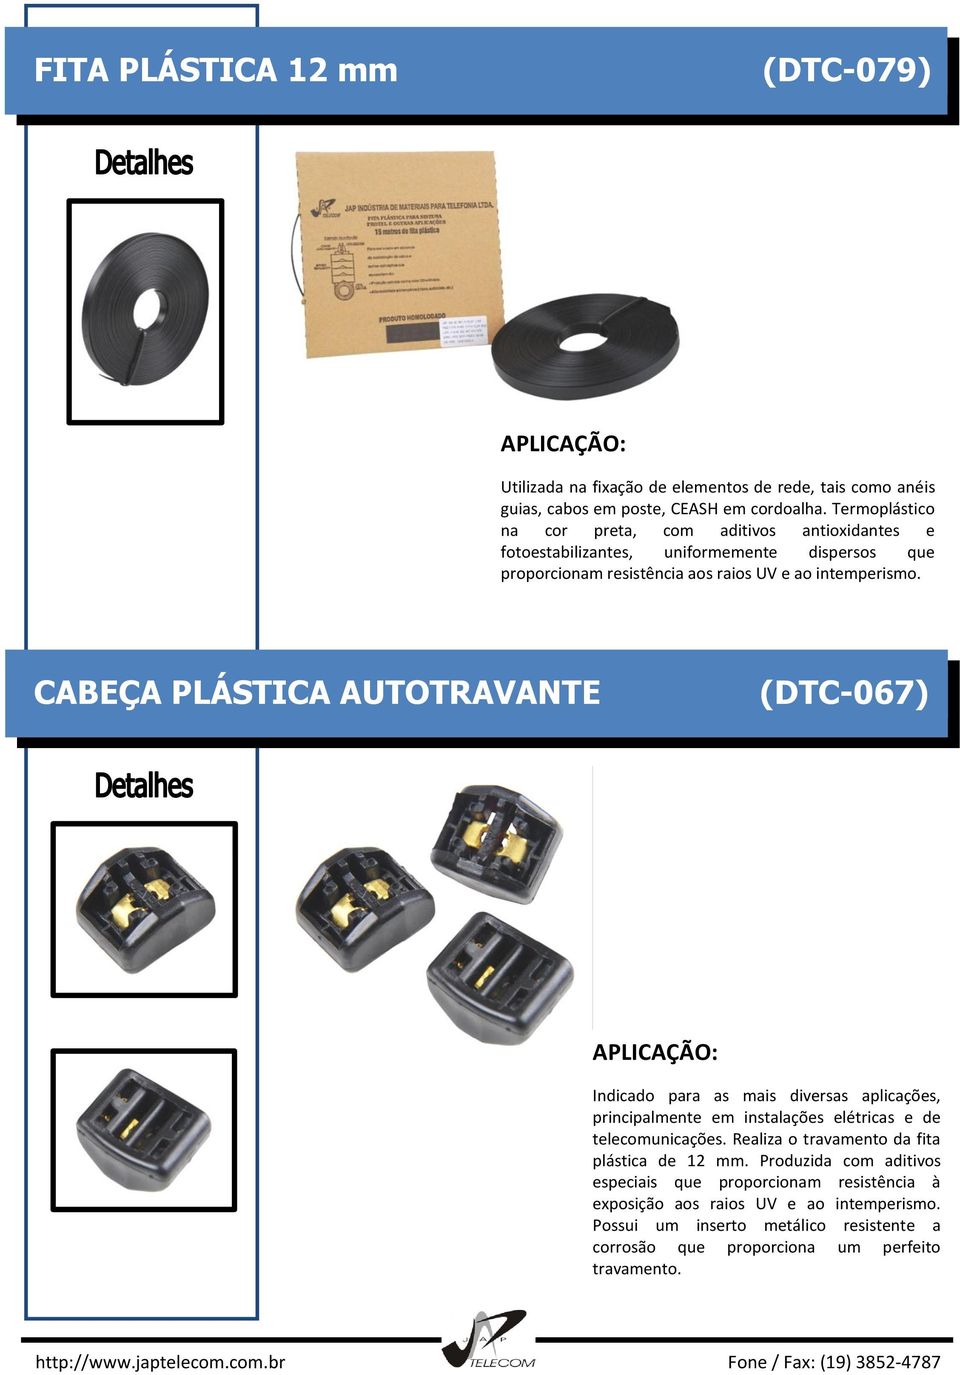 CABEÇA PLÁSTICA AUTOTRAVANTE (DTC-067) Indicado para as mais diversas aplicações, principalmente em instalações elétricas e de telecomunicações.